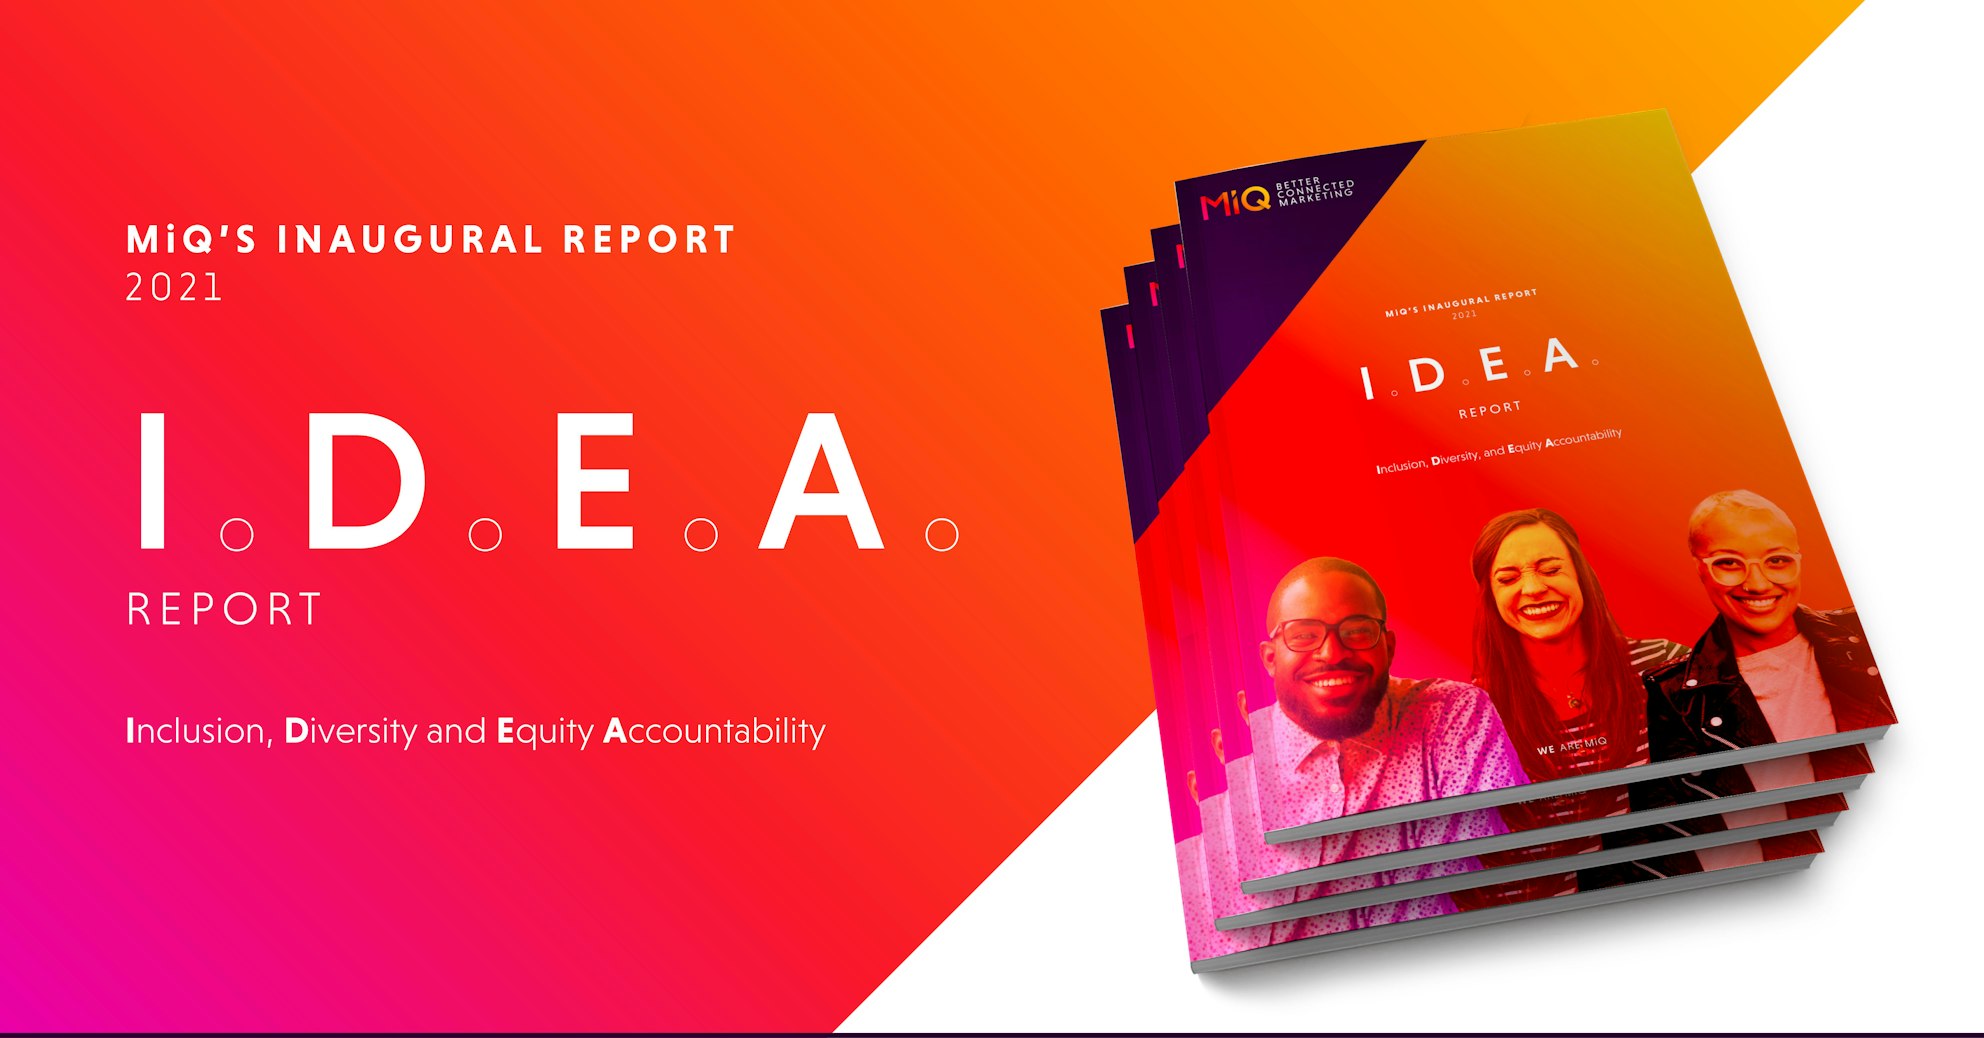 I.D.E.A. Report 2021